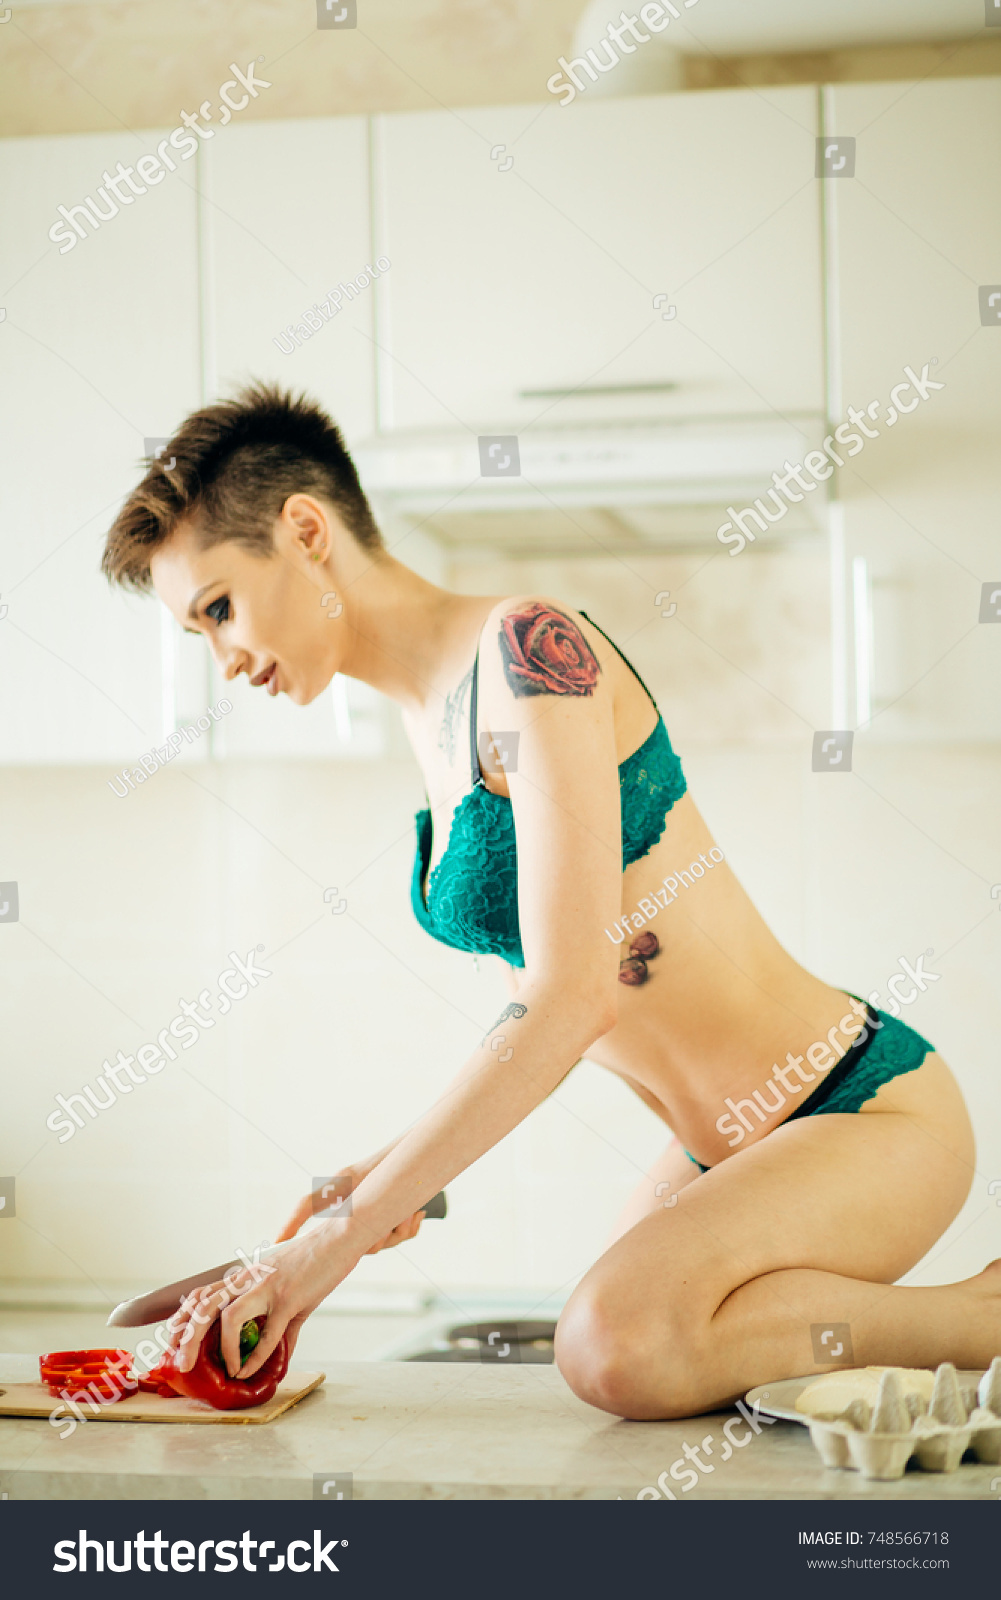 ass hot housewife woman